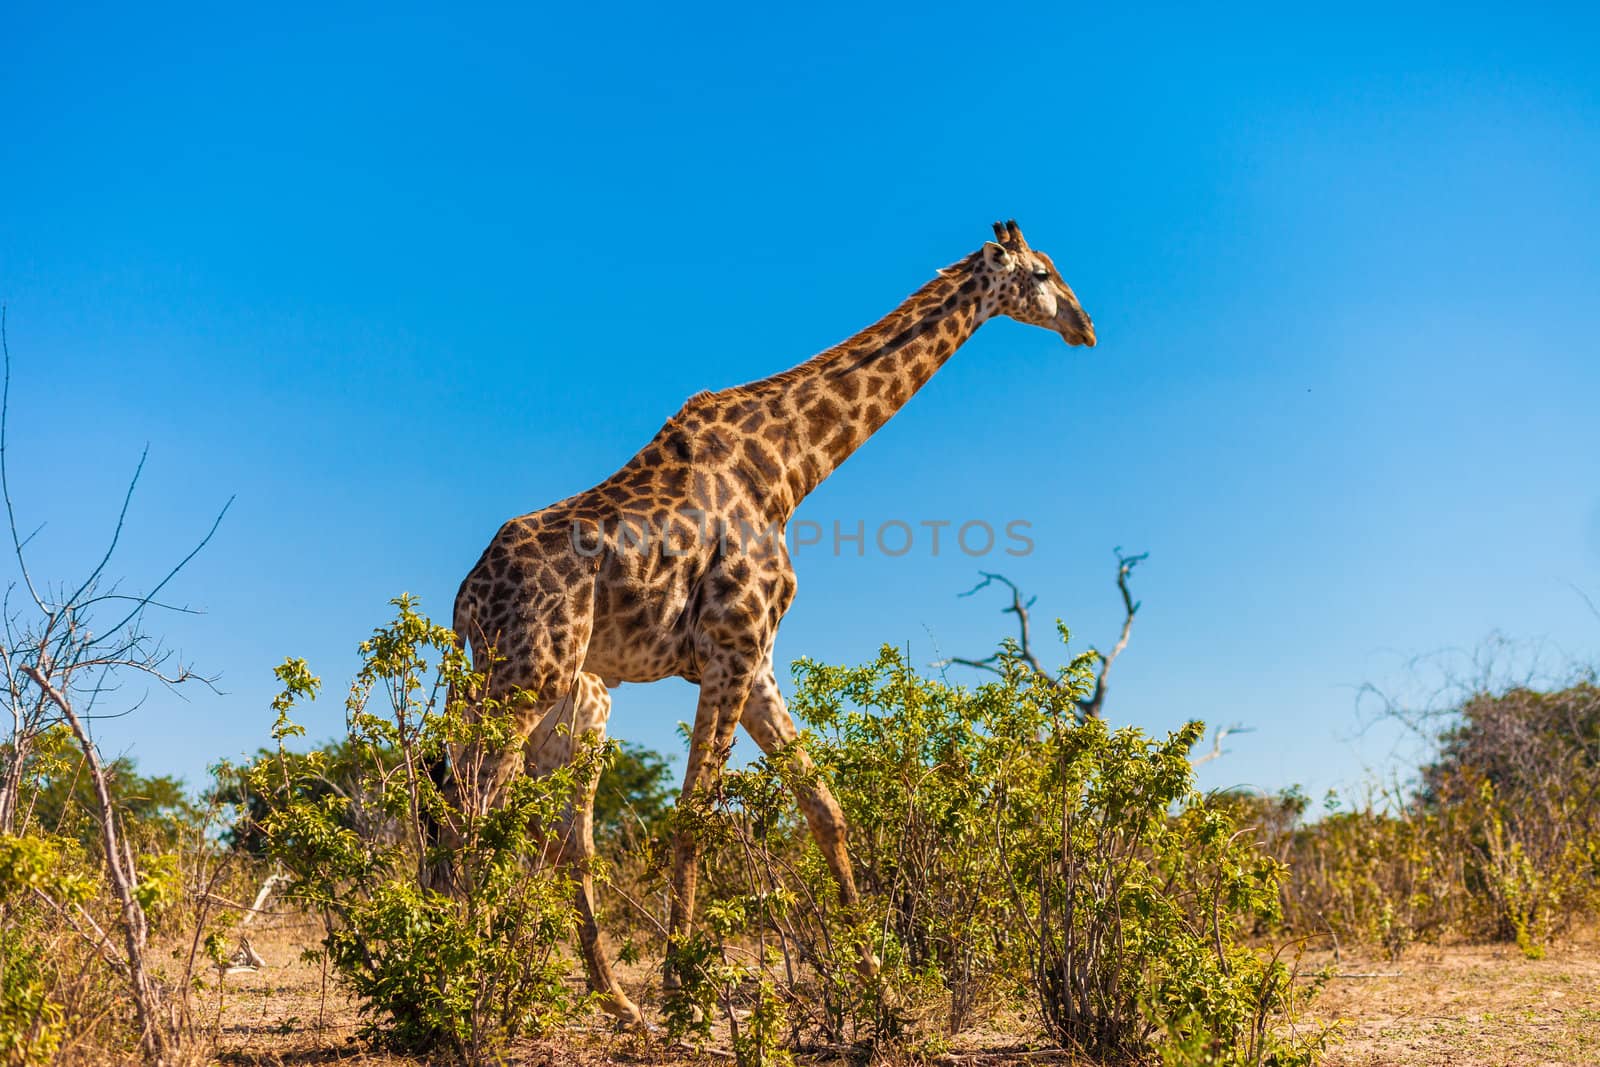 Giraffe (Giraffa camelopardalis) walking, Chobe National Park